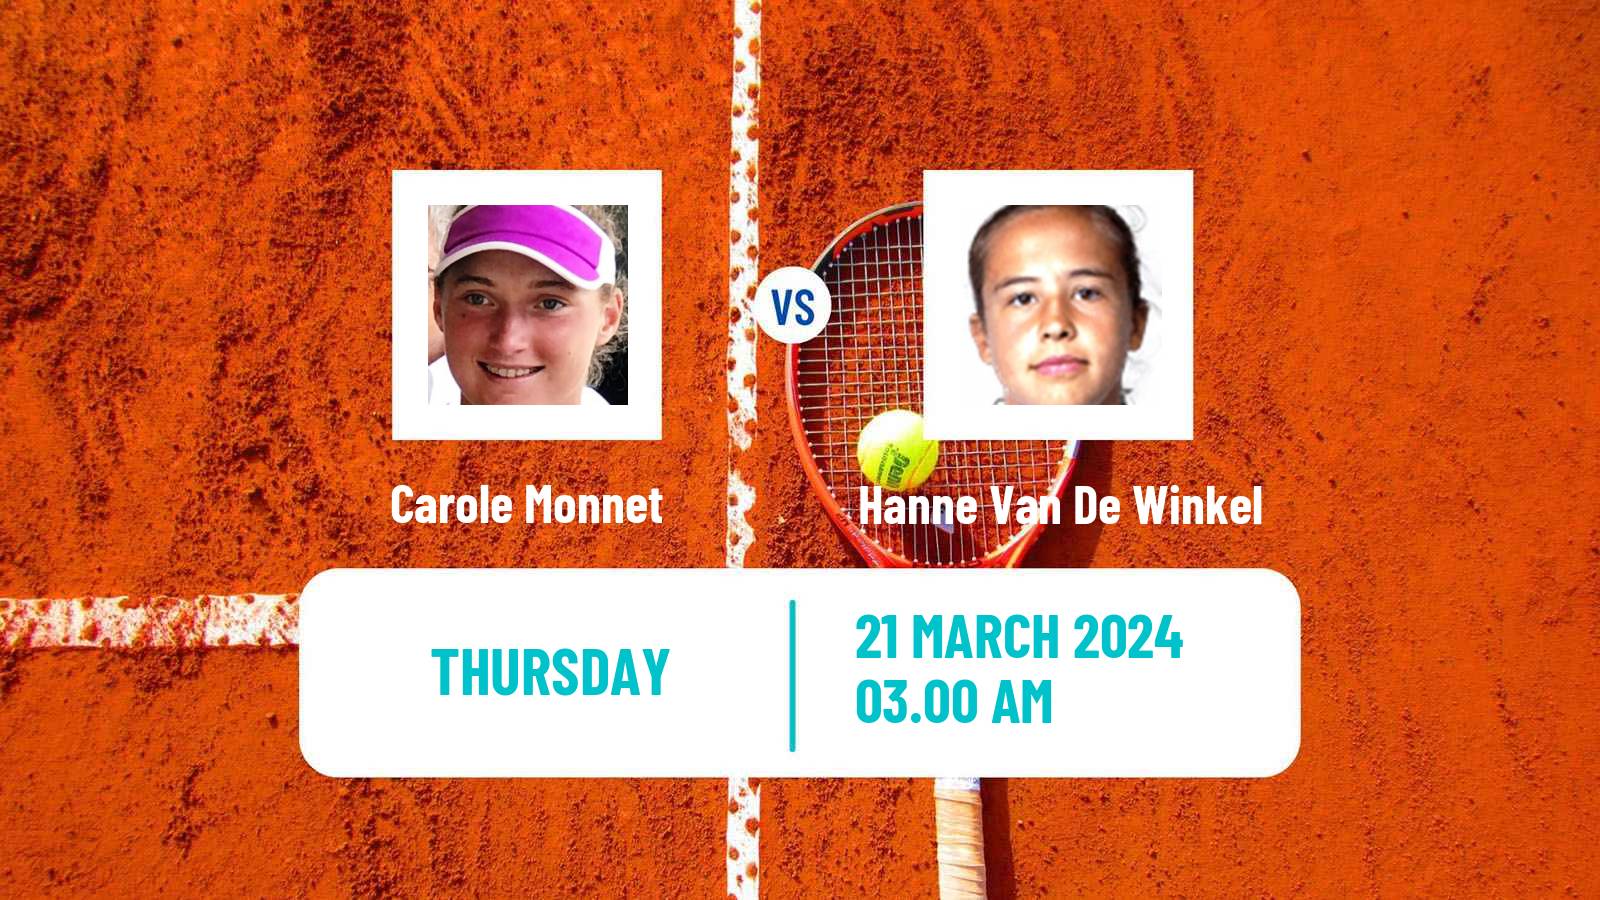 Tennis ITF W35 Alaminos Larnaca 2 Women Carole Monnet - Hanne Van De Winkel